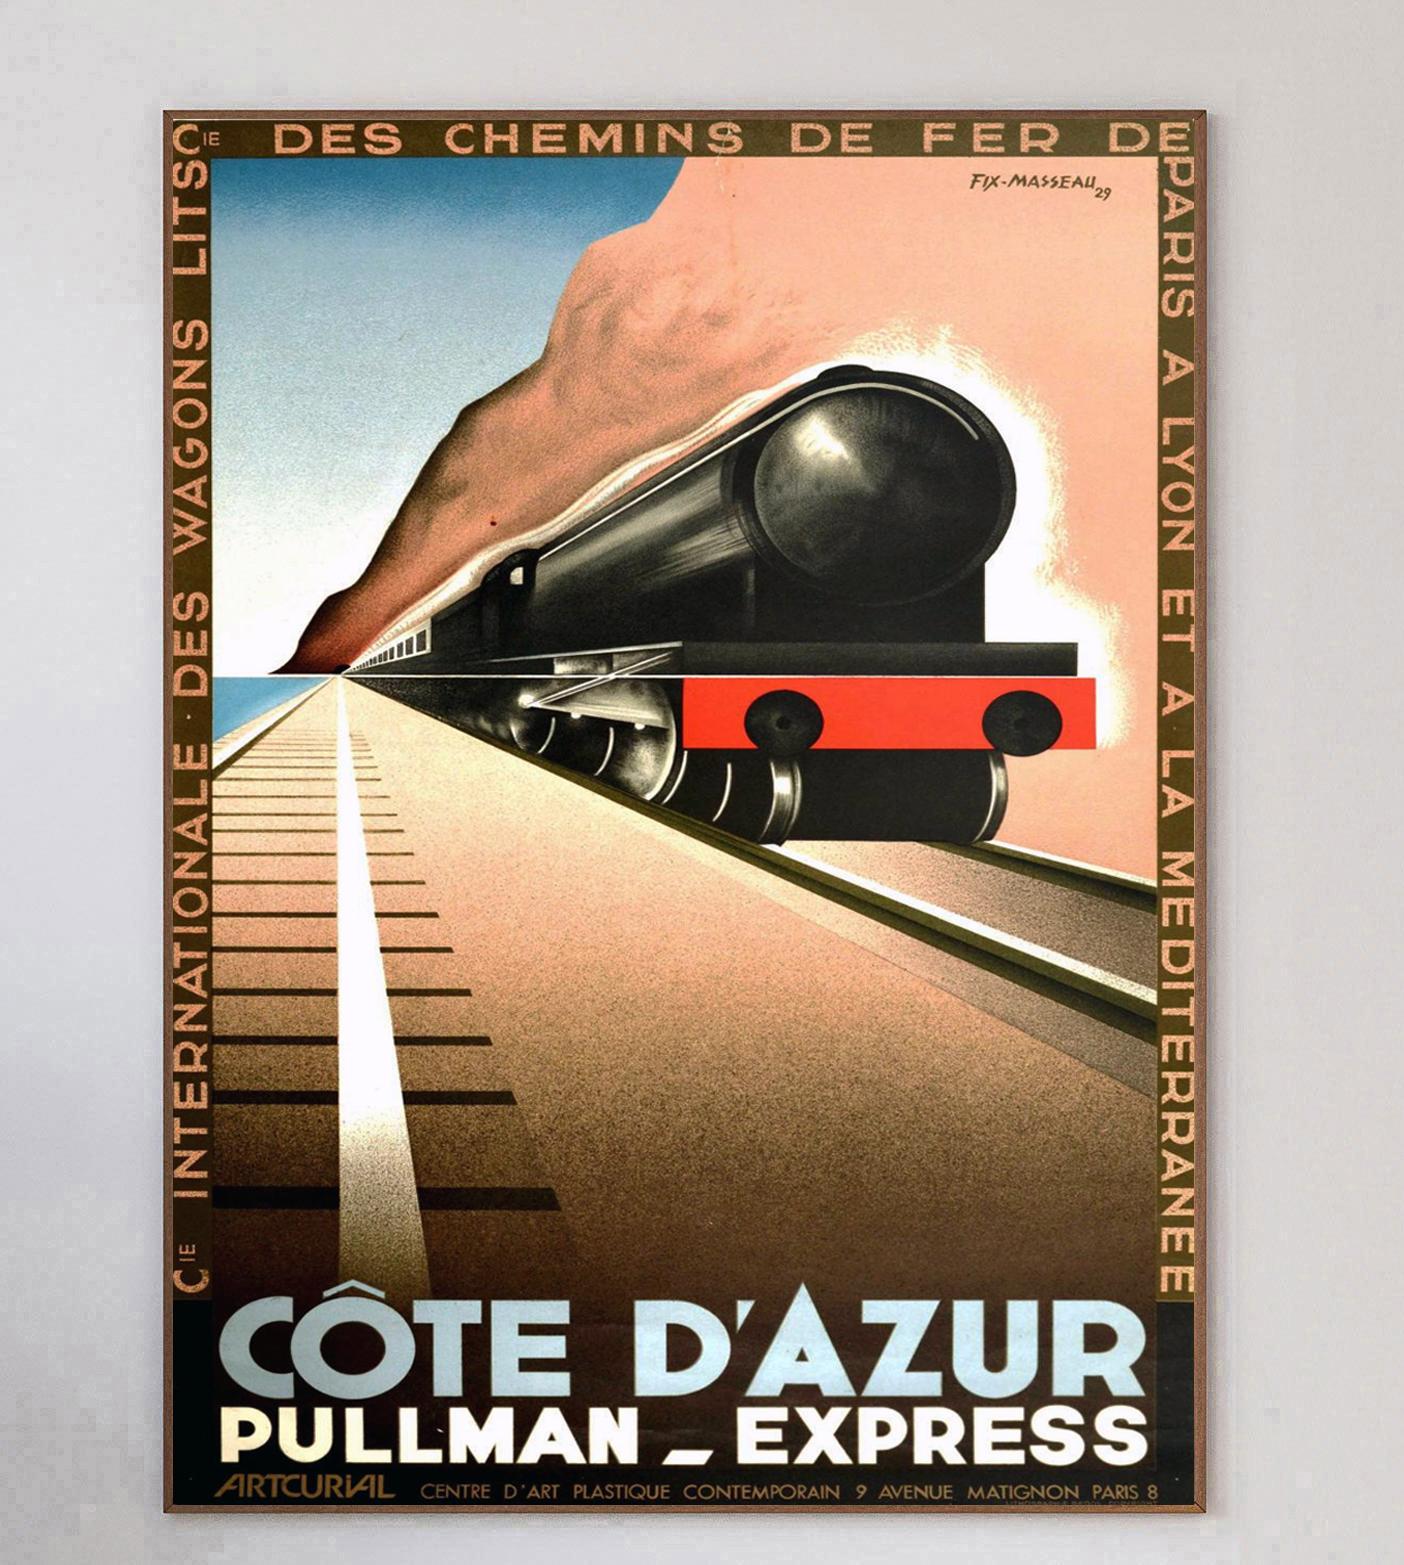 Cette superbe et rare affiche lithographique sur pierre a été conçue par le grand affichiste français Fix Masseau et publiée en 1982.

Promouvant la ligne de train Pullman Express de la Côte d'Azur, qui a fonctionné de 1929 à 1939, ce superbe dessin